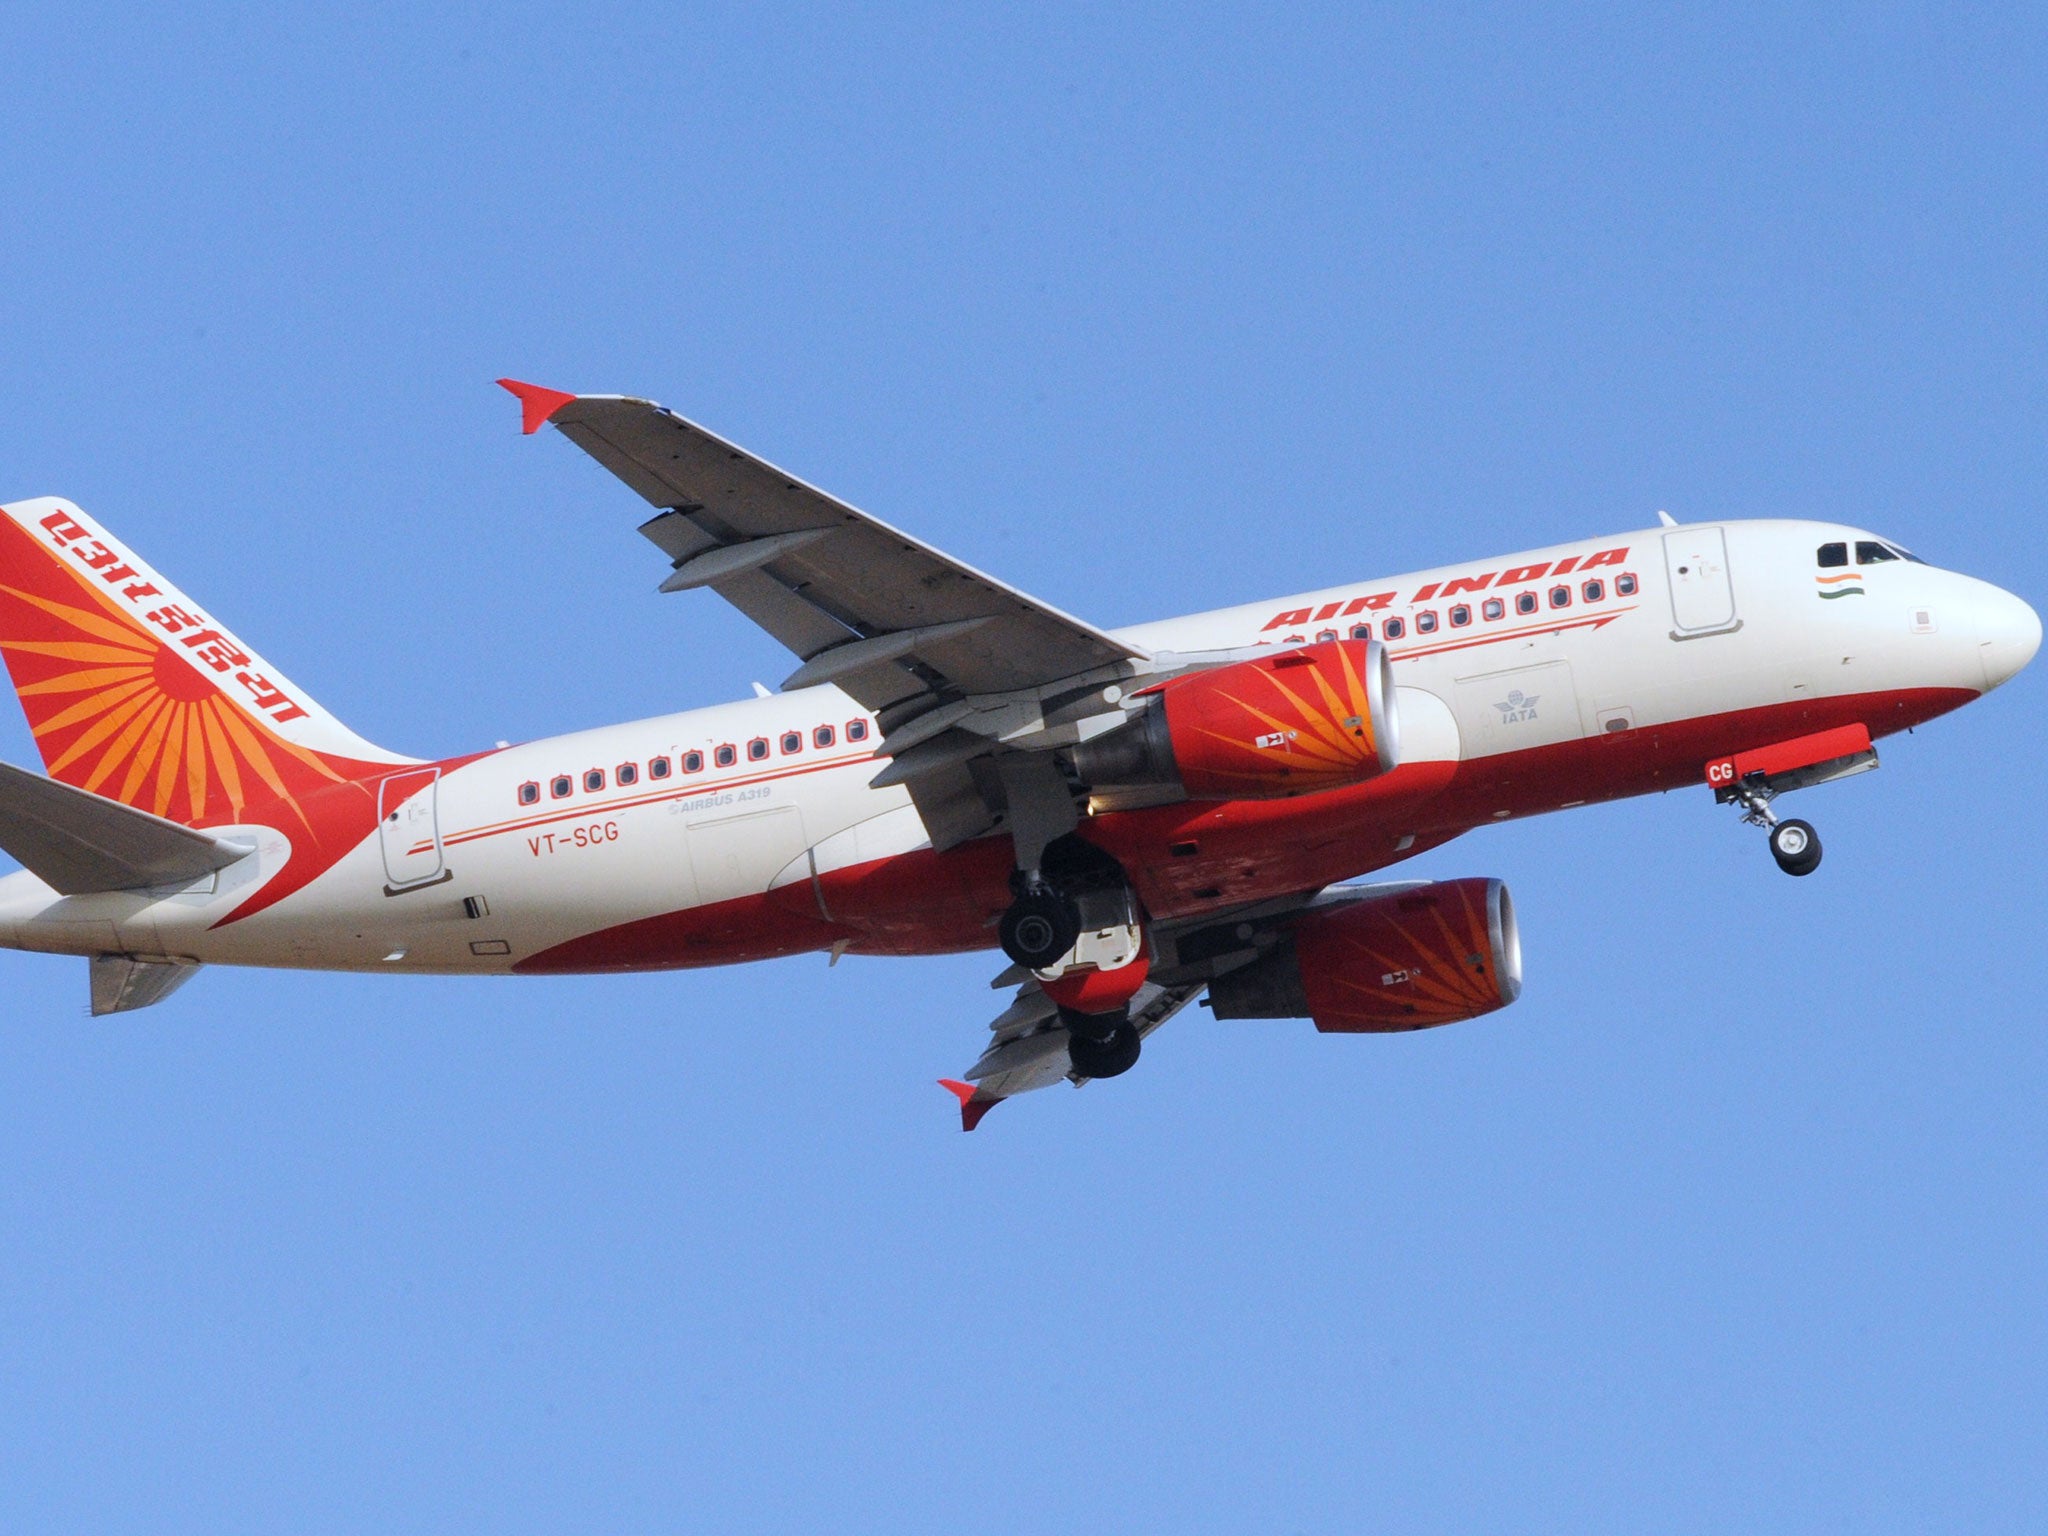 An Air India flight made an emergency landing after it set alight